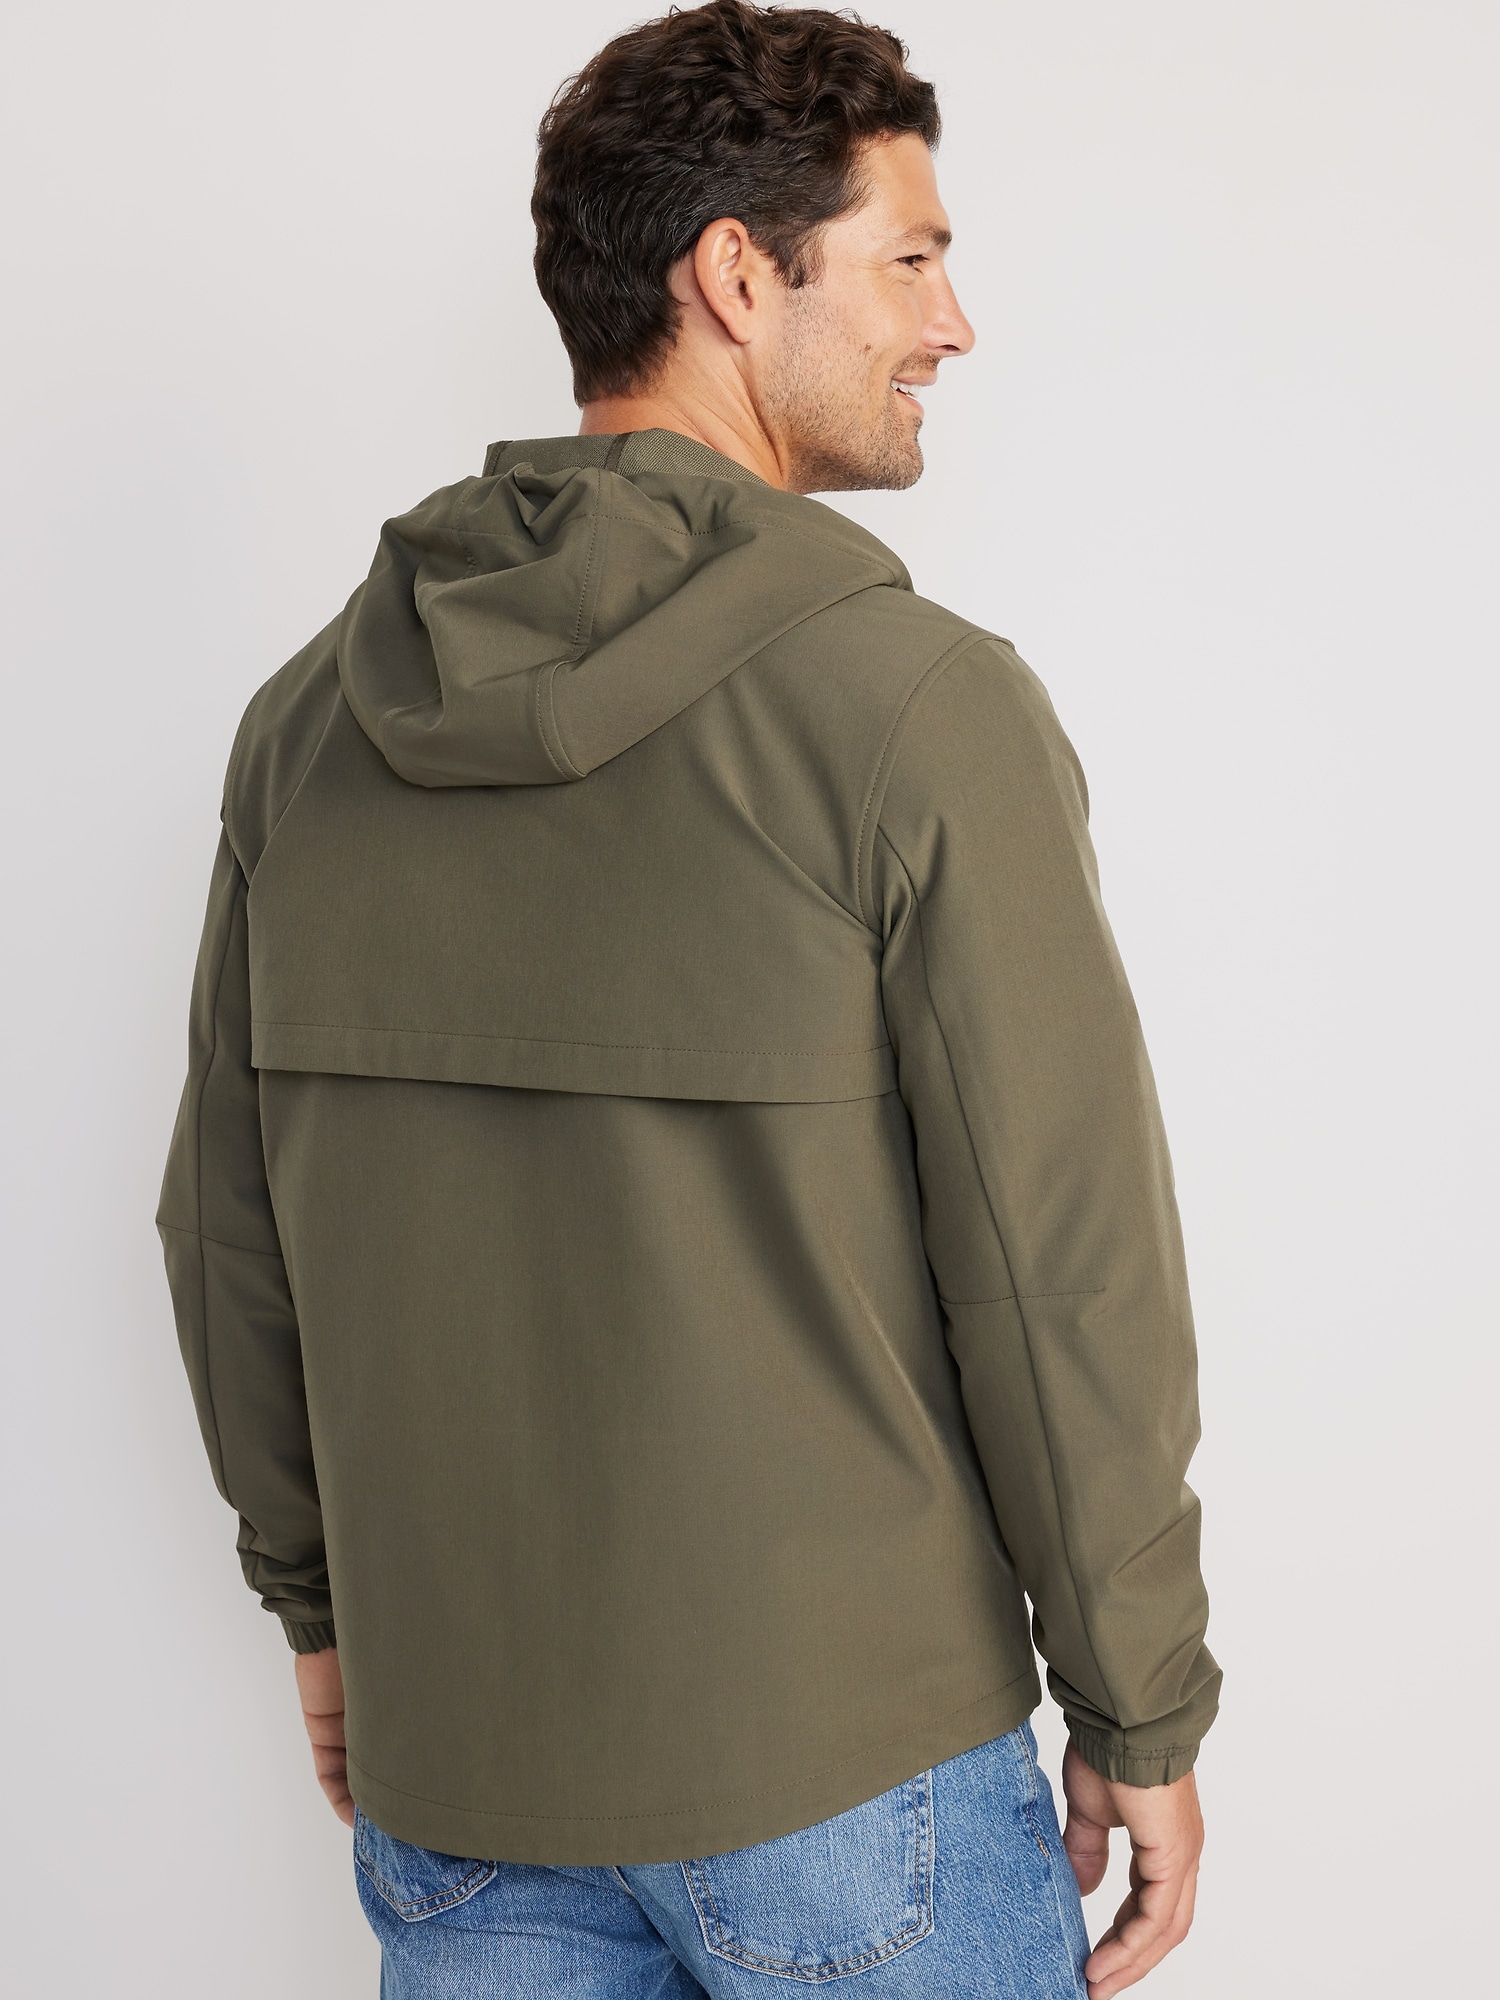 StretchTech Water-Repellent Hooded 2-Way-Zip Jacket for Men